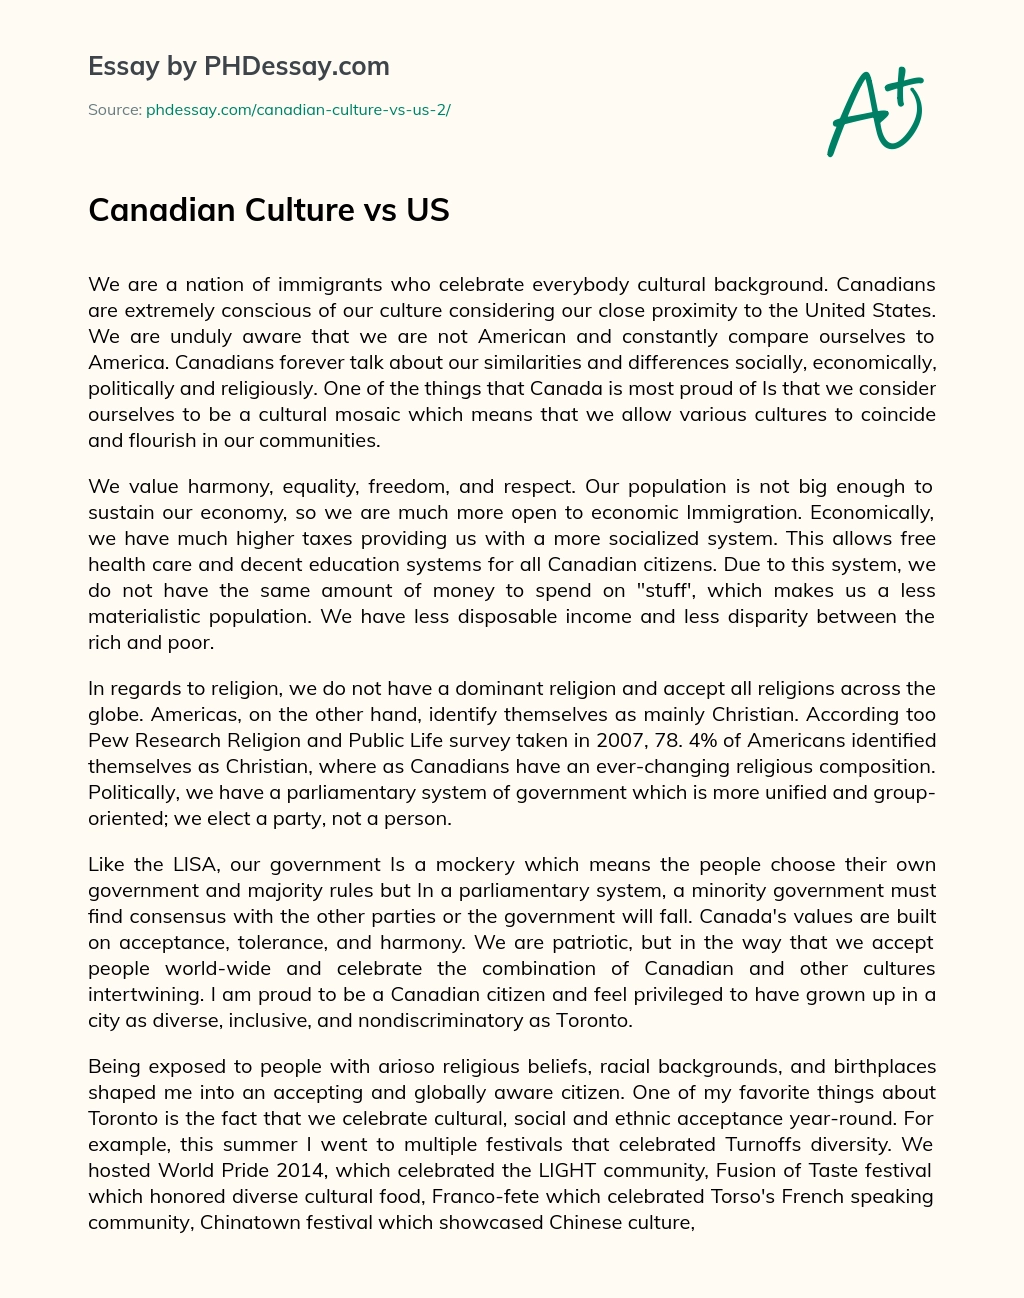 Canadian Culture vs US essay